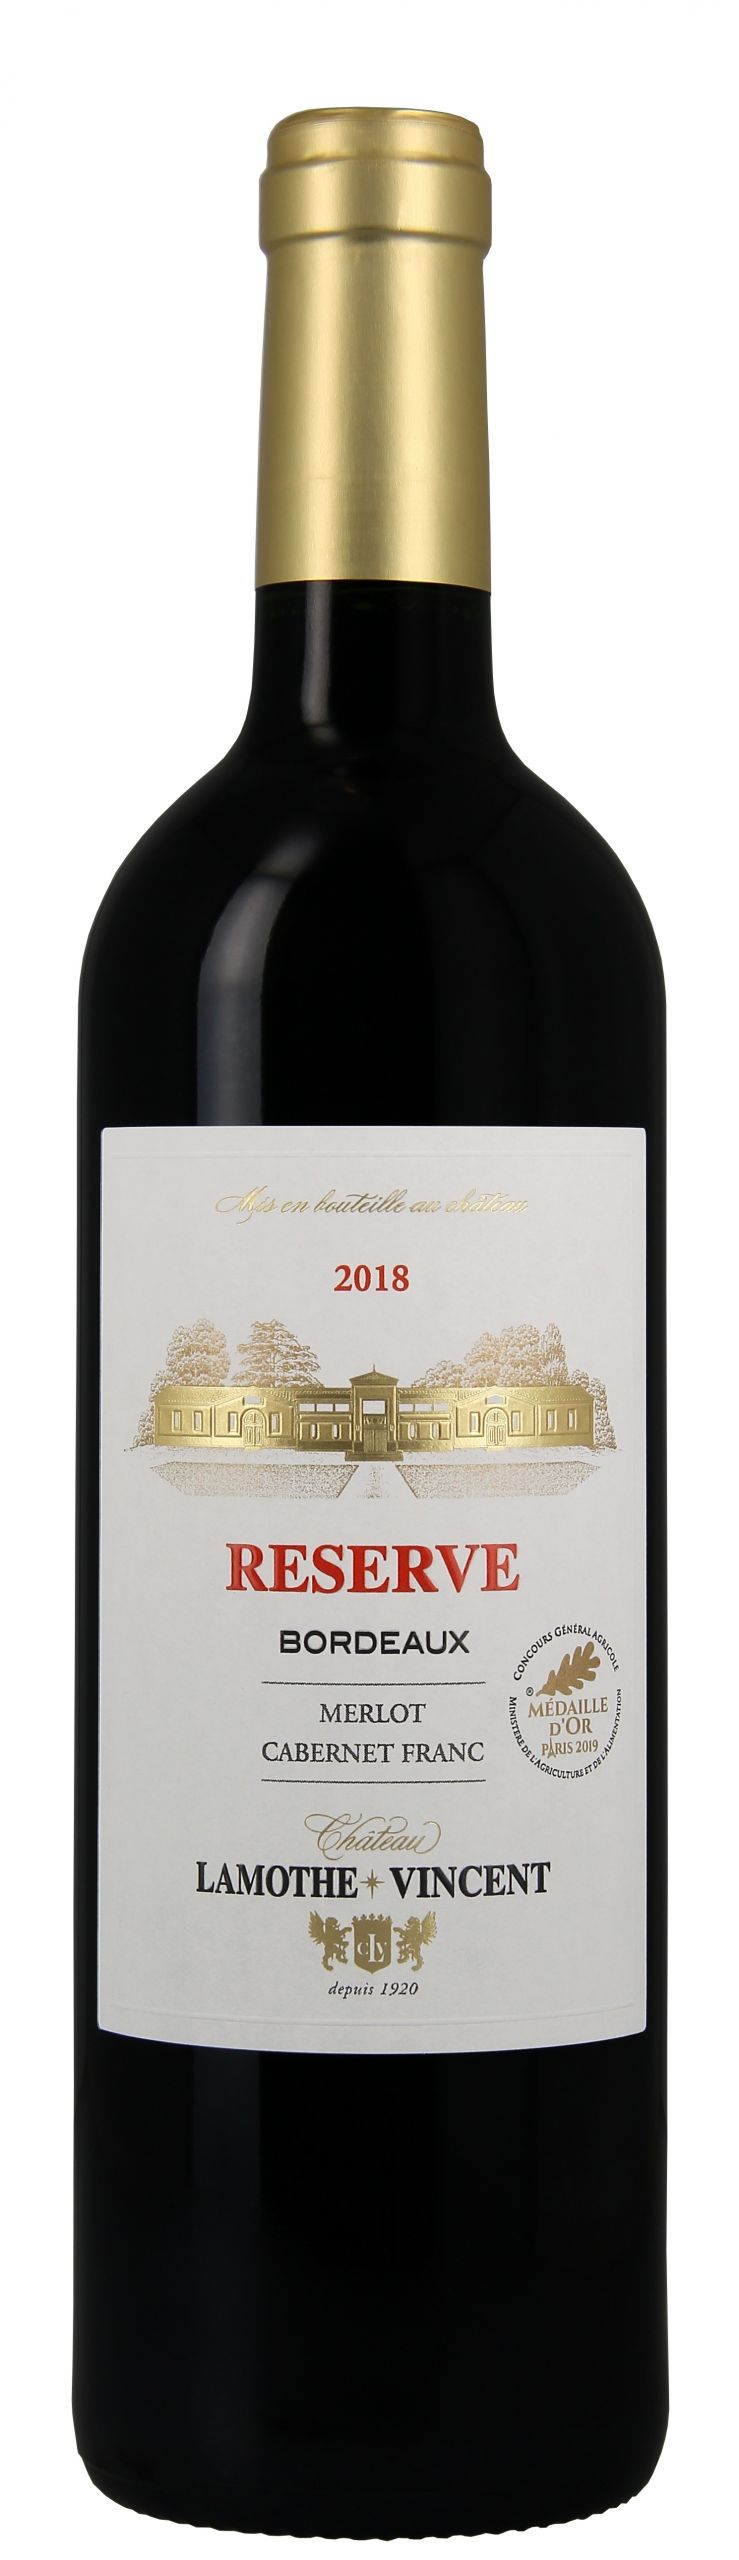 Image of Reserve Bordeaux Merlot Cabernet Franc 2019